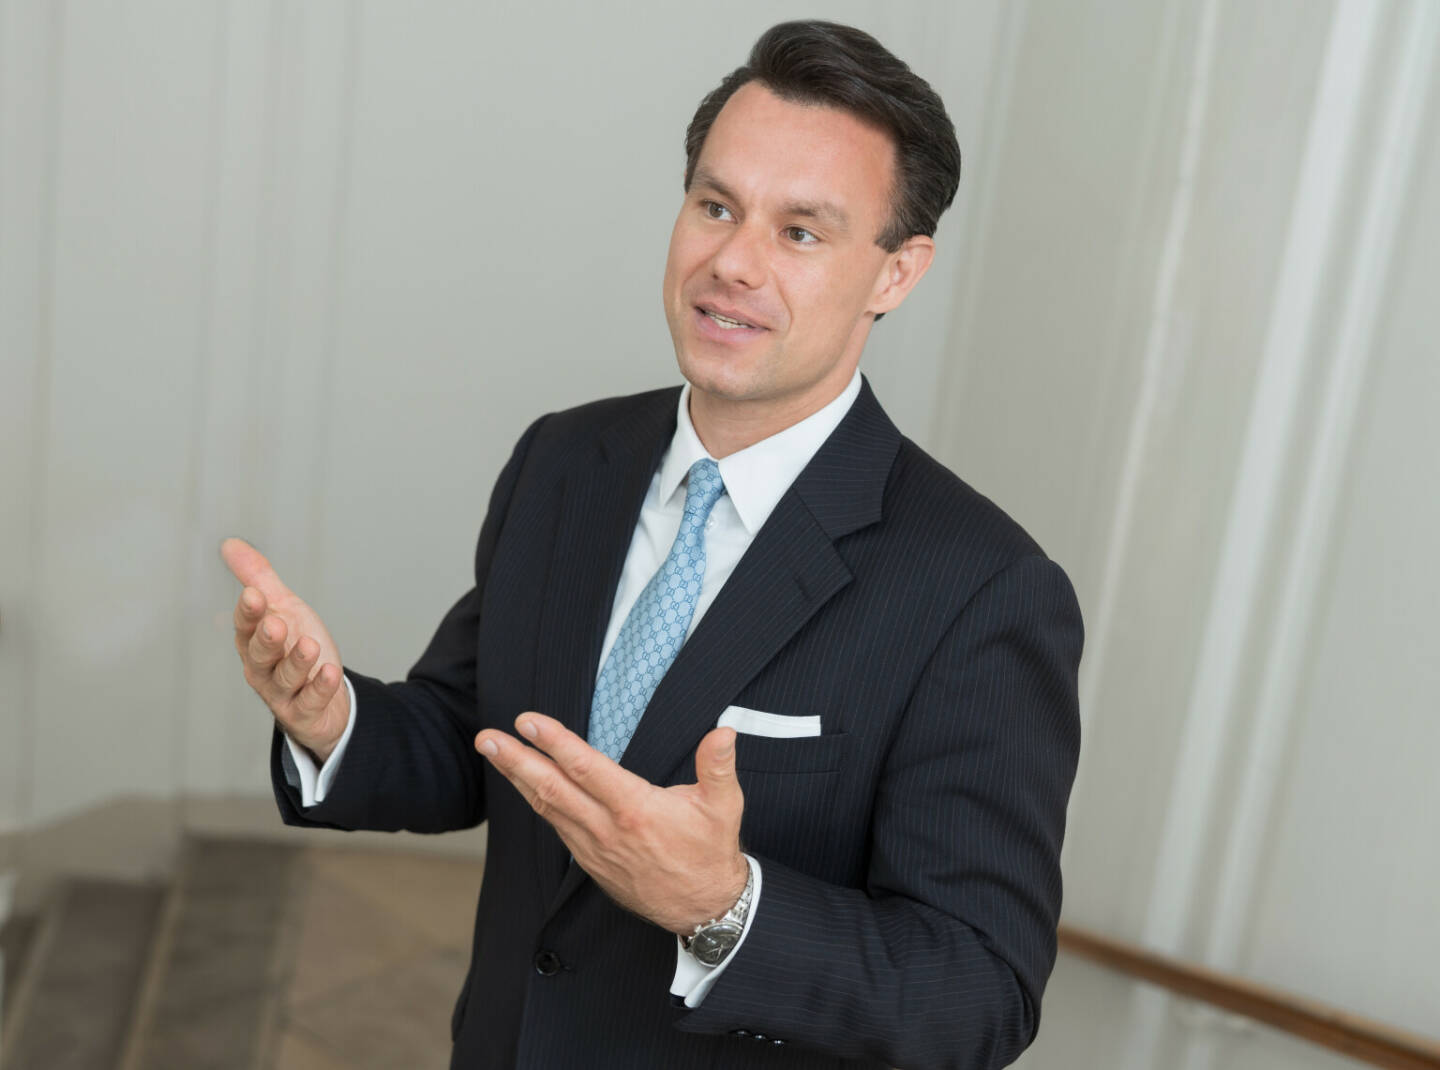 Der Aufsichtsrat der Wiener Börse AG hat die Bestellung von Christoph Boschan zum Vorstandsvorsitzenden um eine weitere Periode von fünf Jahren einstimmig und vorzeitig verlängert. Credit: Wiener Börse